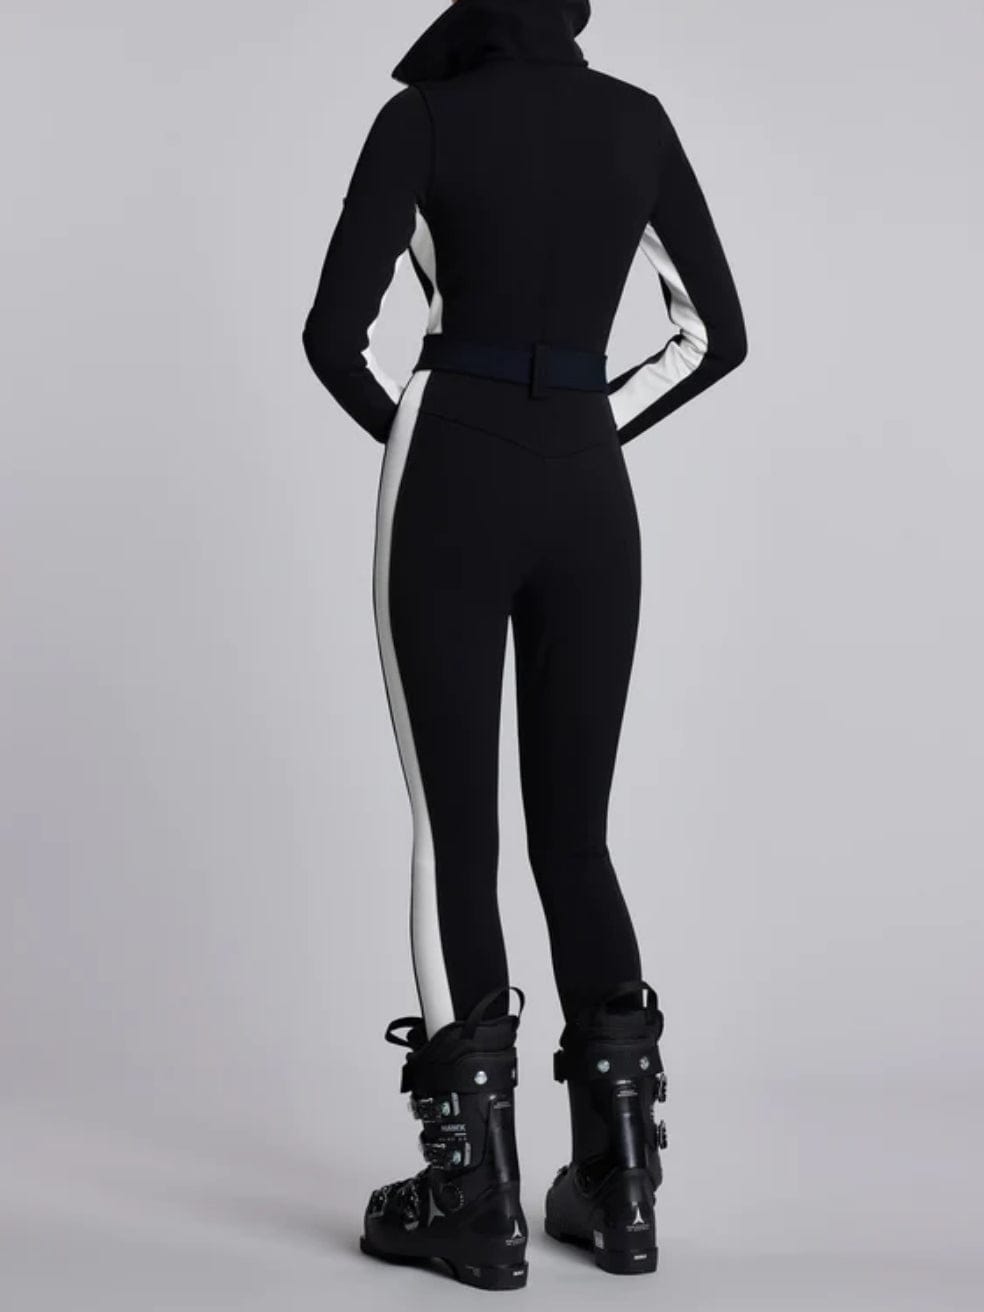 The Cordova Ski Suit in Black